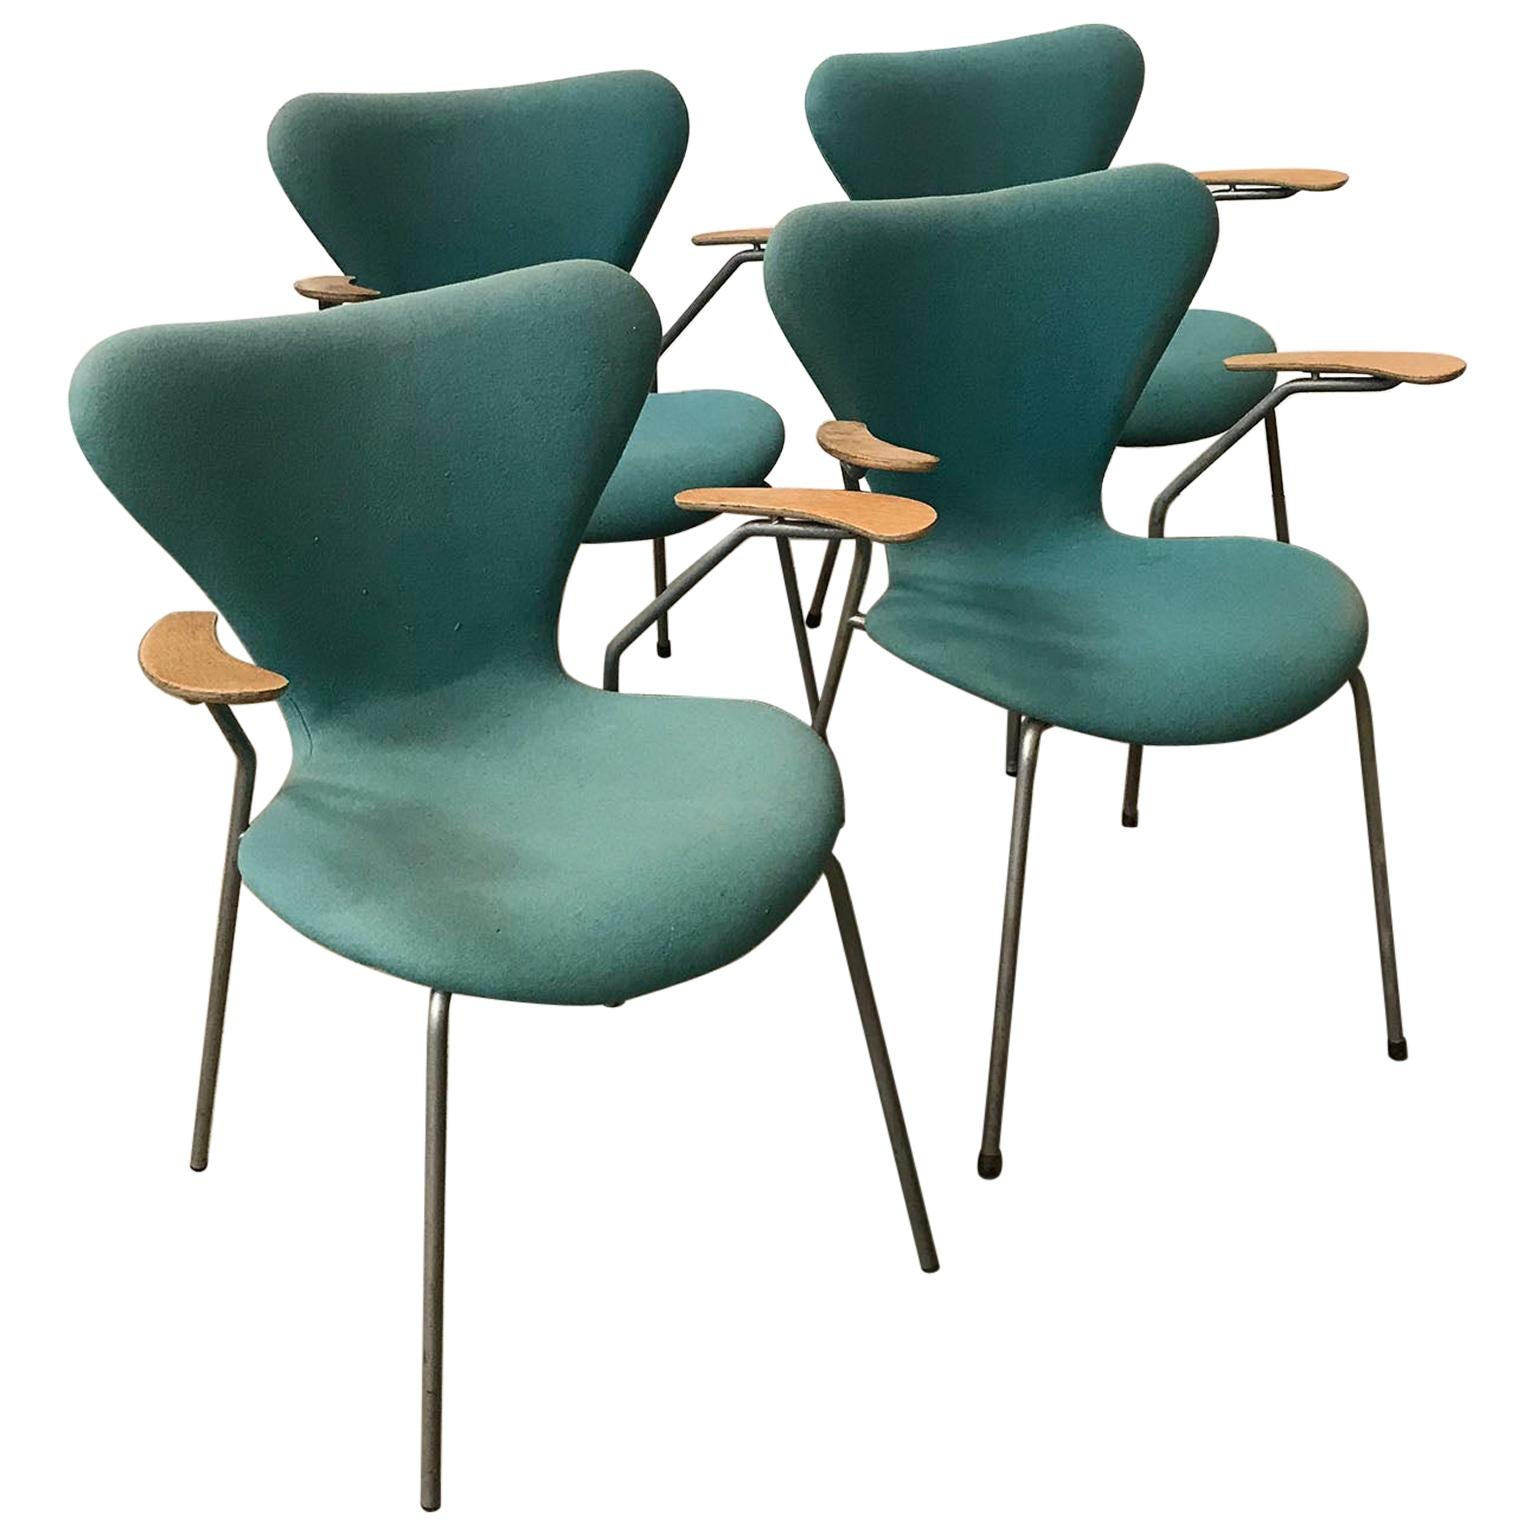 1955, Arne Jacobsen, Ensemble de quatre fauteuils papillon 3207 tapissés turquoise